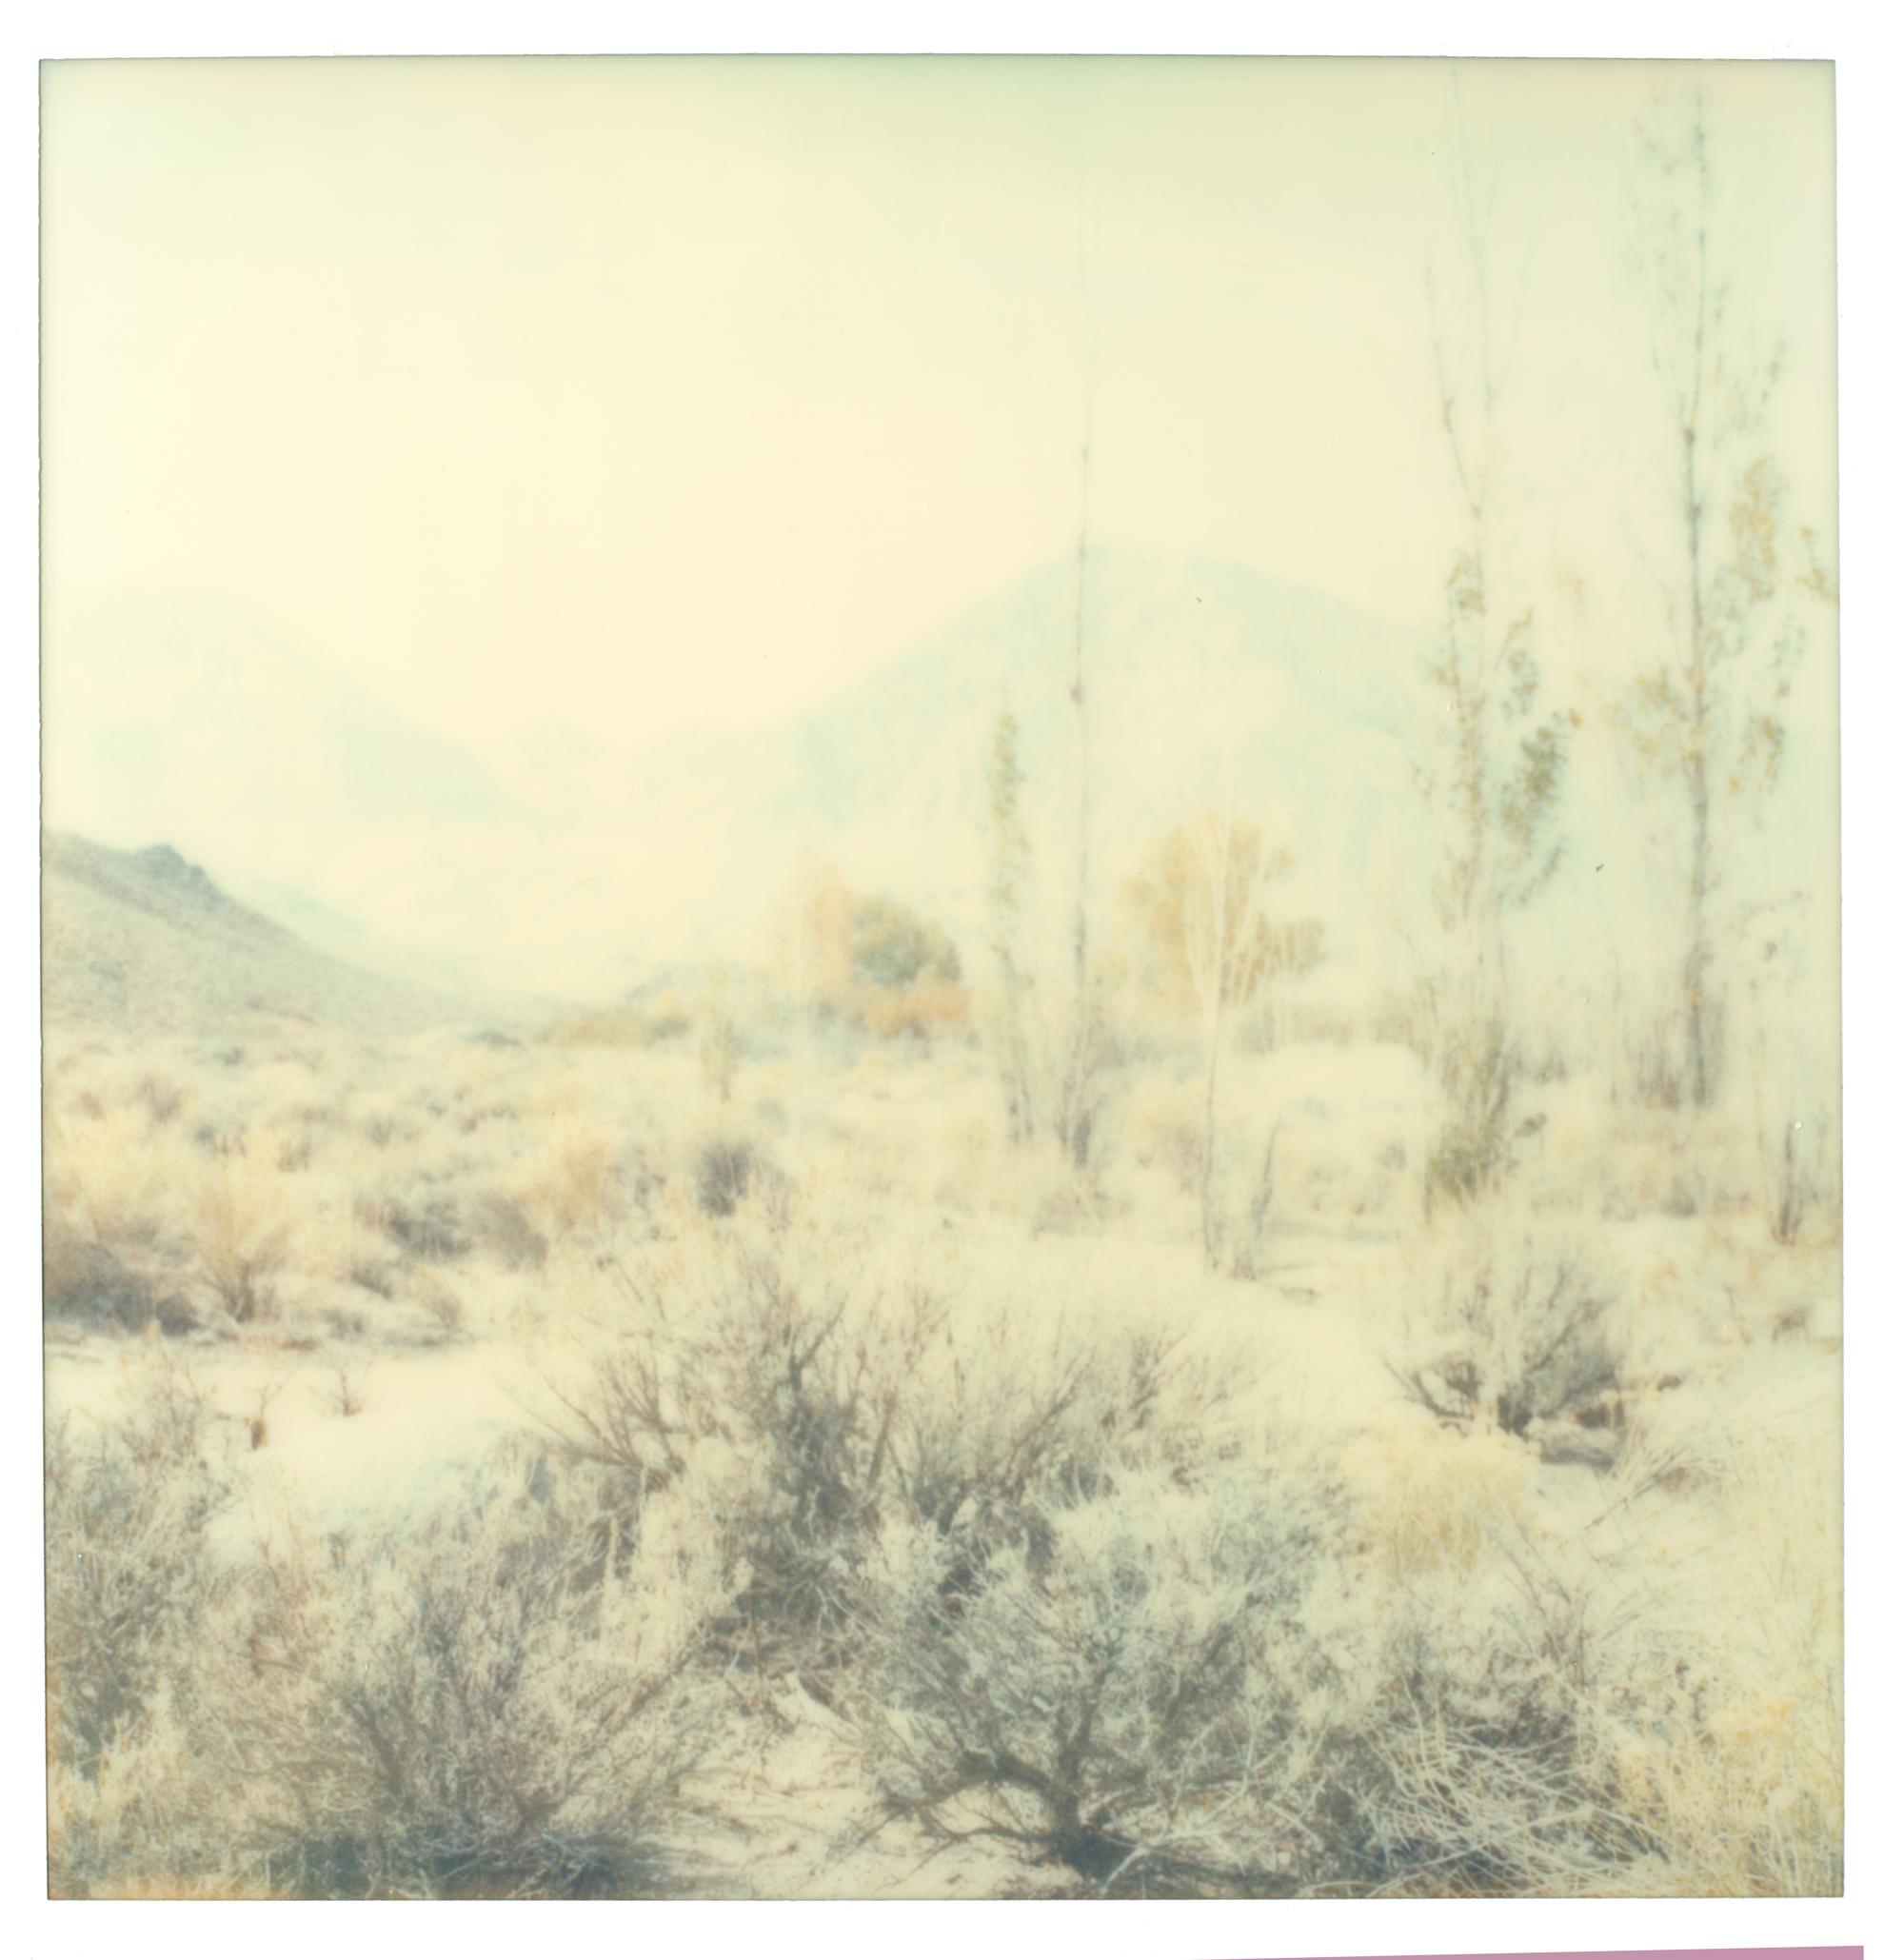 Landscape Photograph Stefanie Schneider - Wastelands - Polaroid, expiré. Contemporain, Couleur